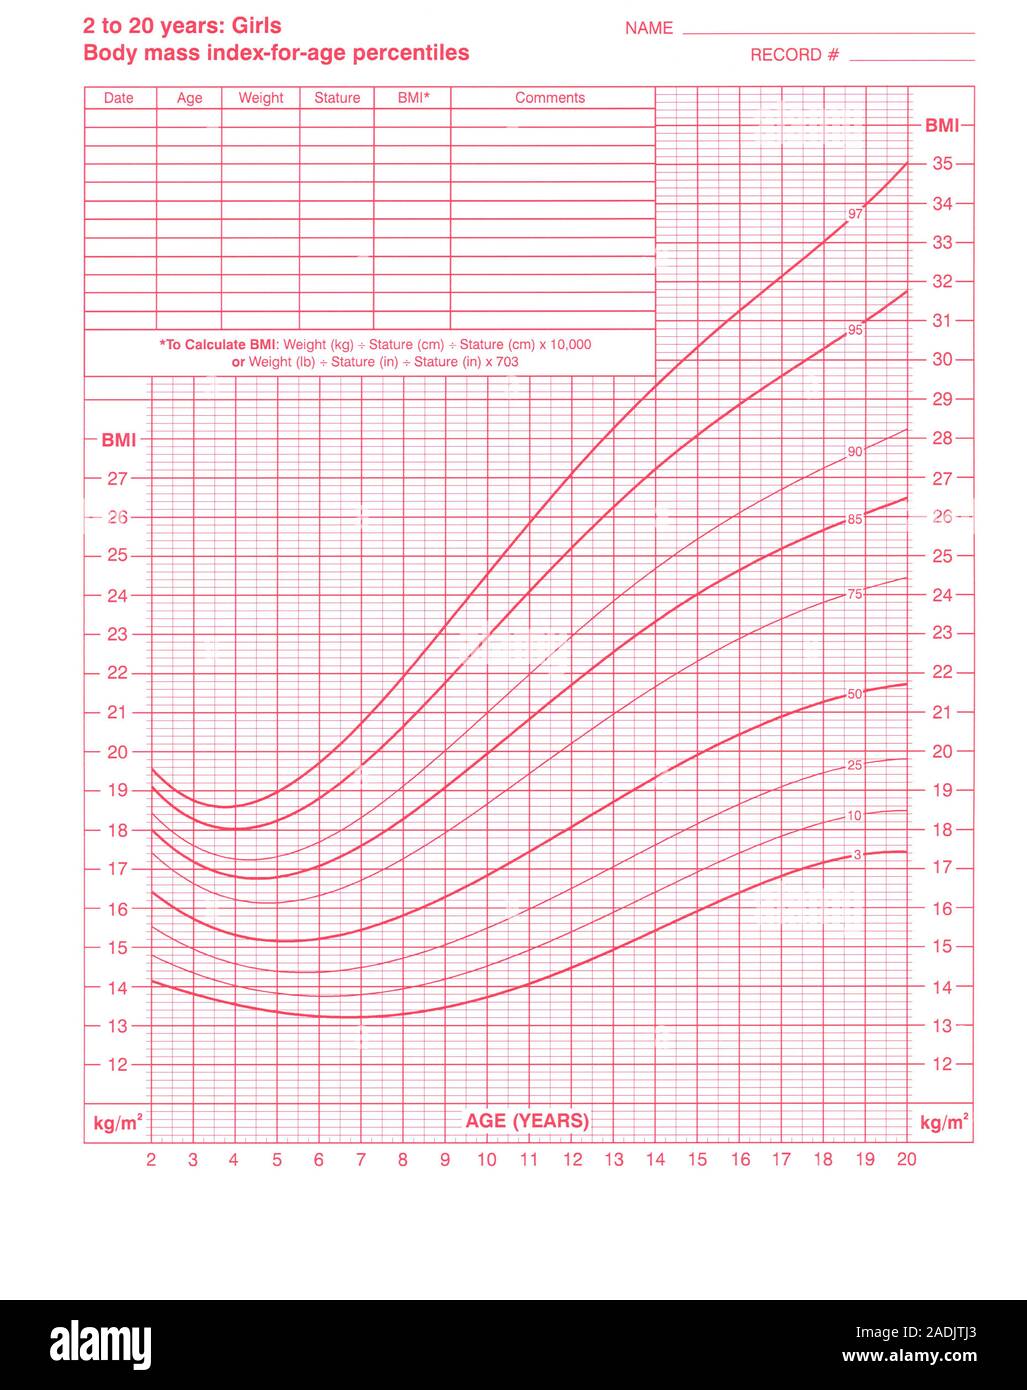 Gráfico de índice de masa corporal (IMC). Este es un índice de masa  corporal para la edad gráfico para niñas de entre 2 y 20 años de edad. El  IMC es una